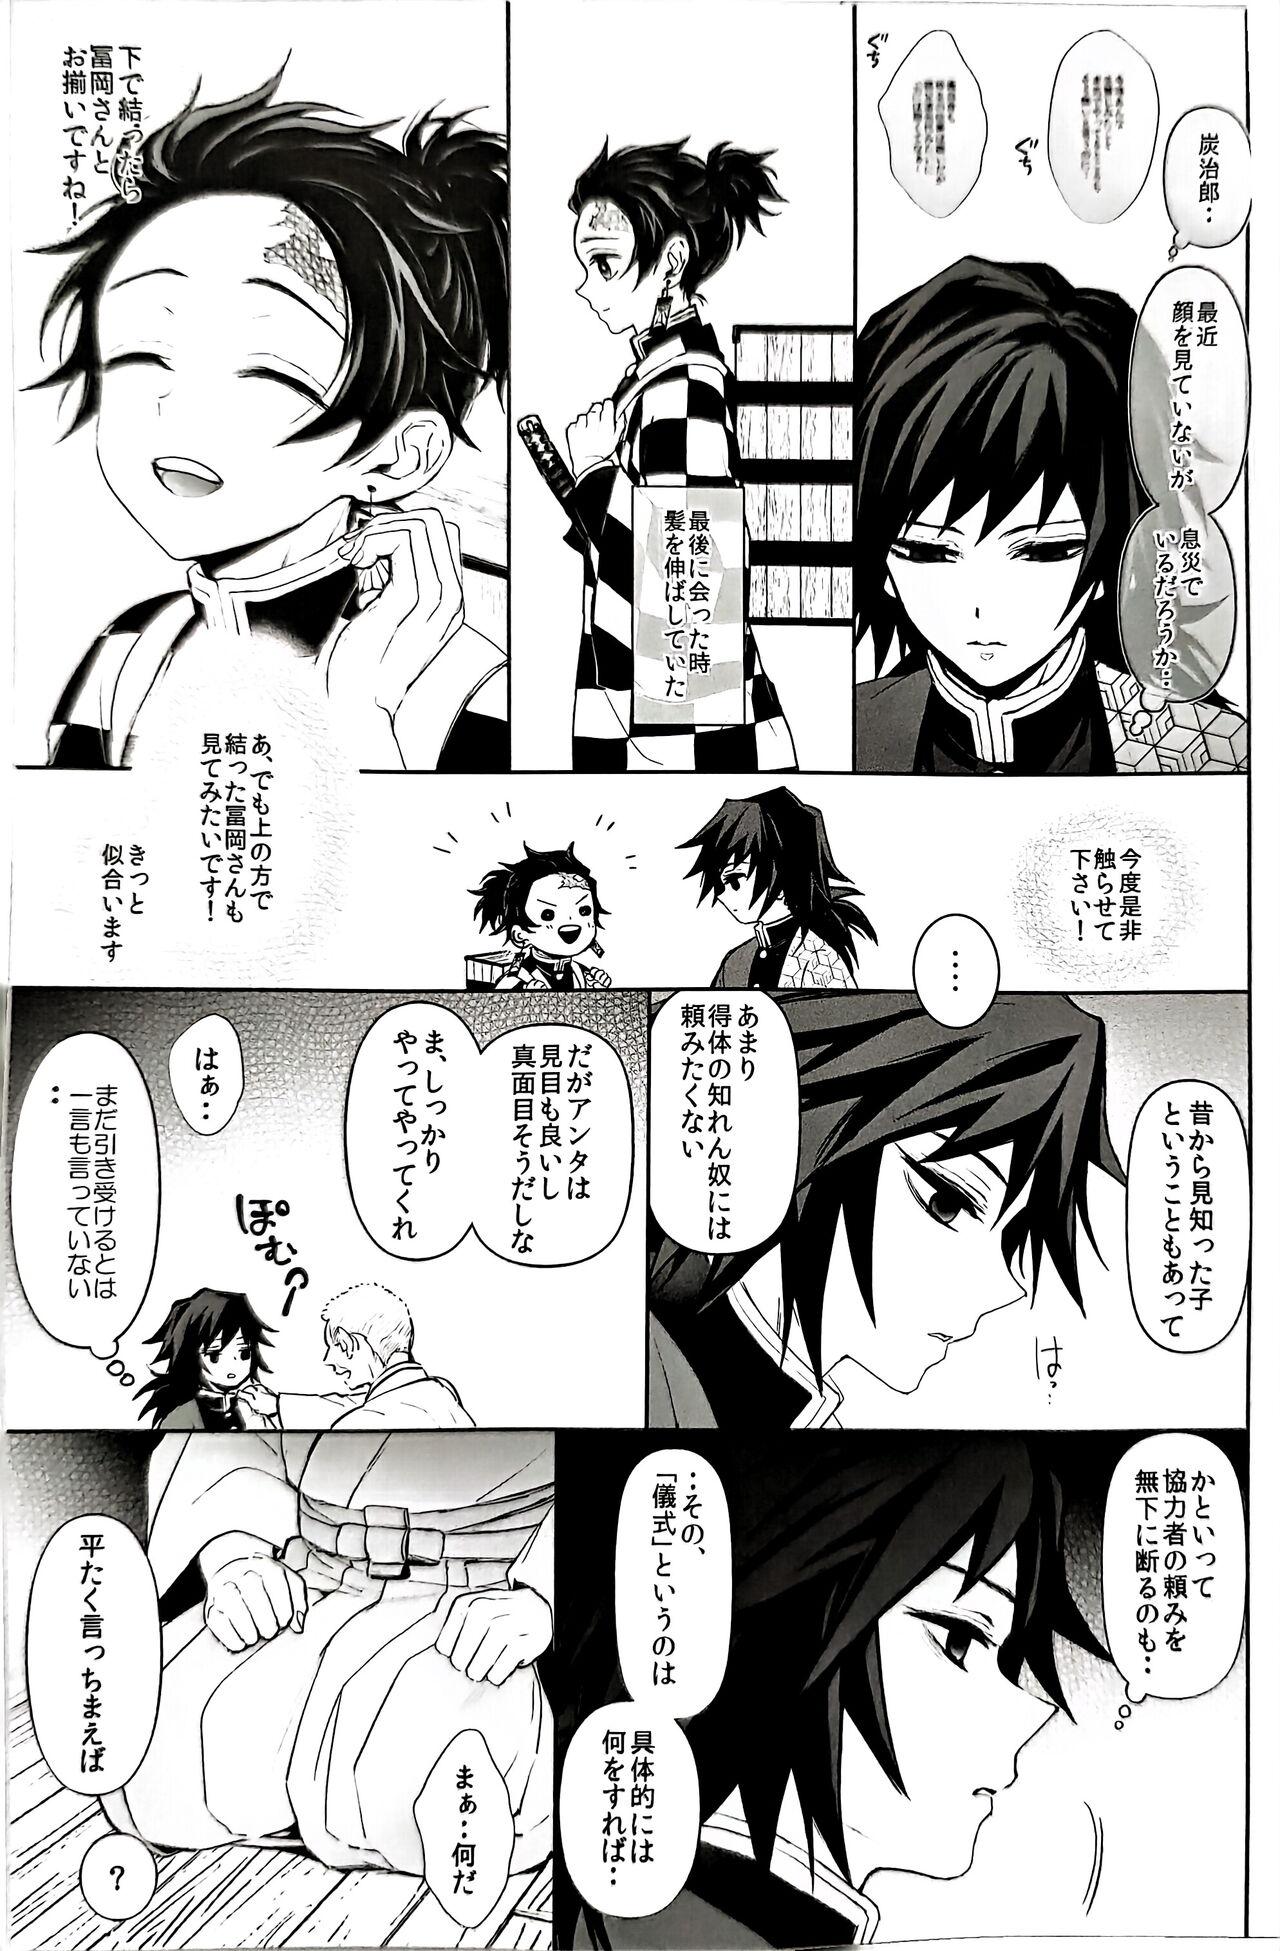 Stunning Netsu o Haramu - Kimetsu no yaiba | demon slayer Gaystraight - Page 8